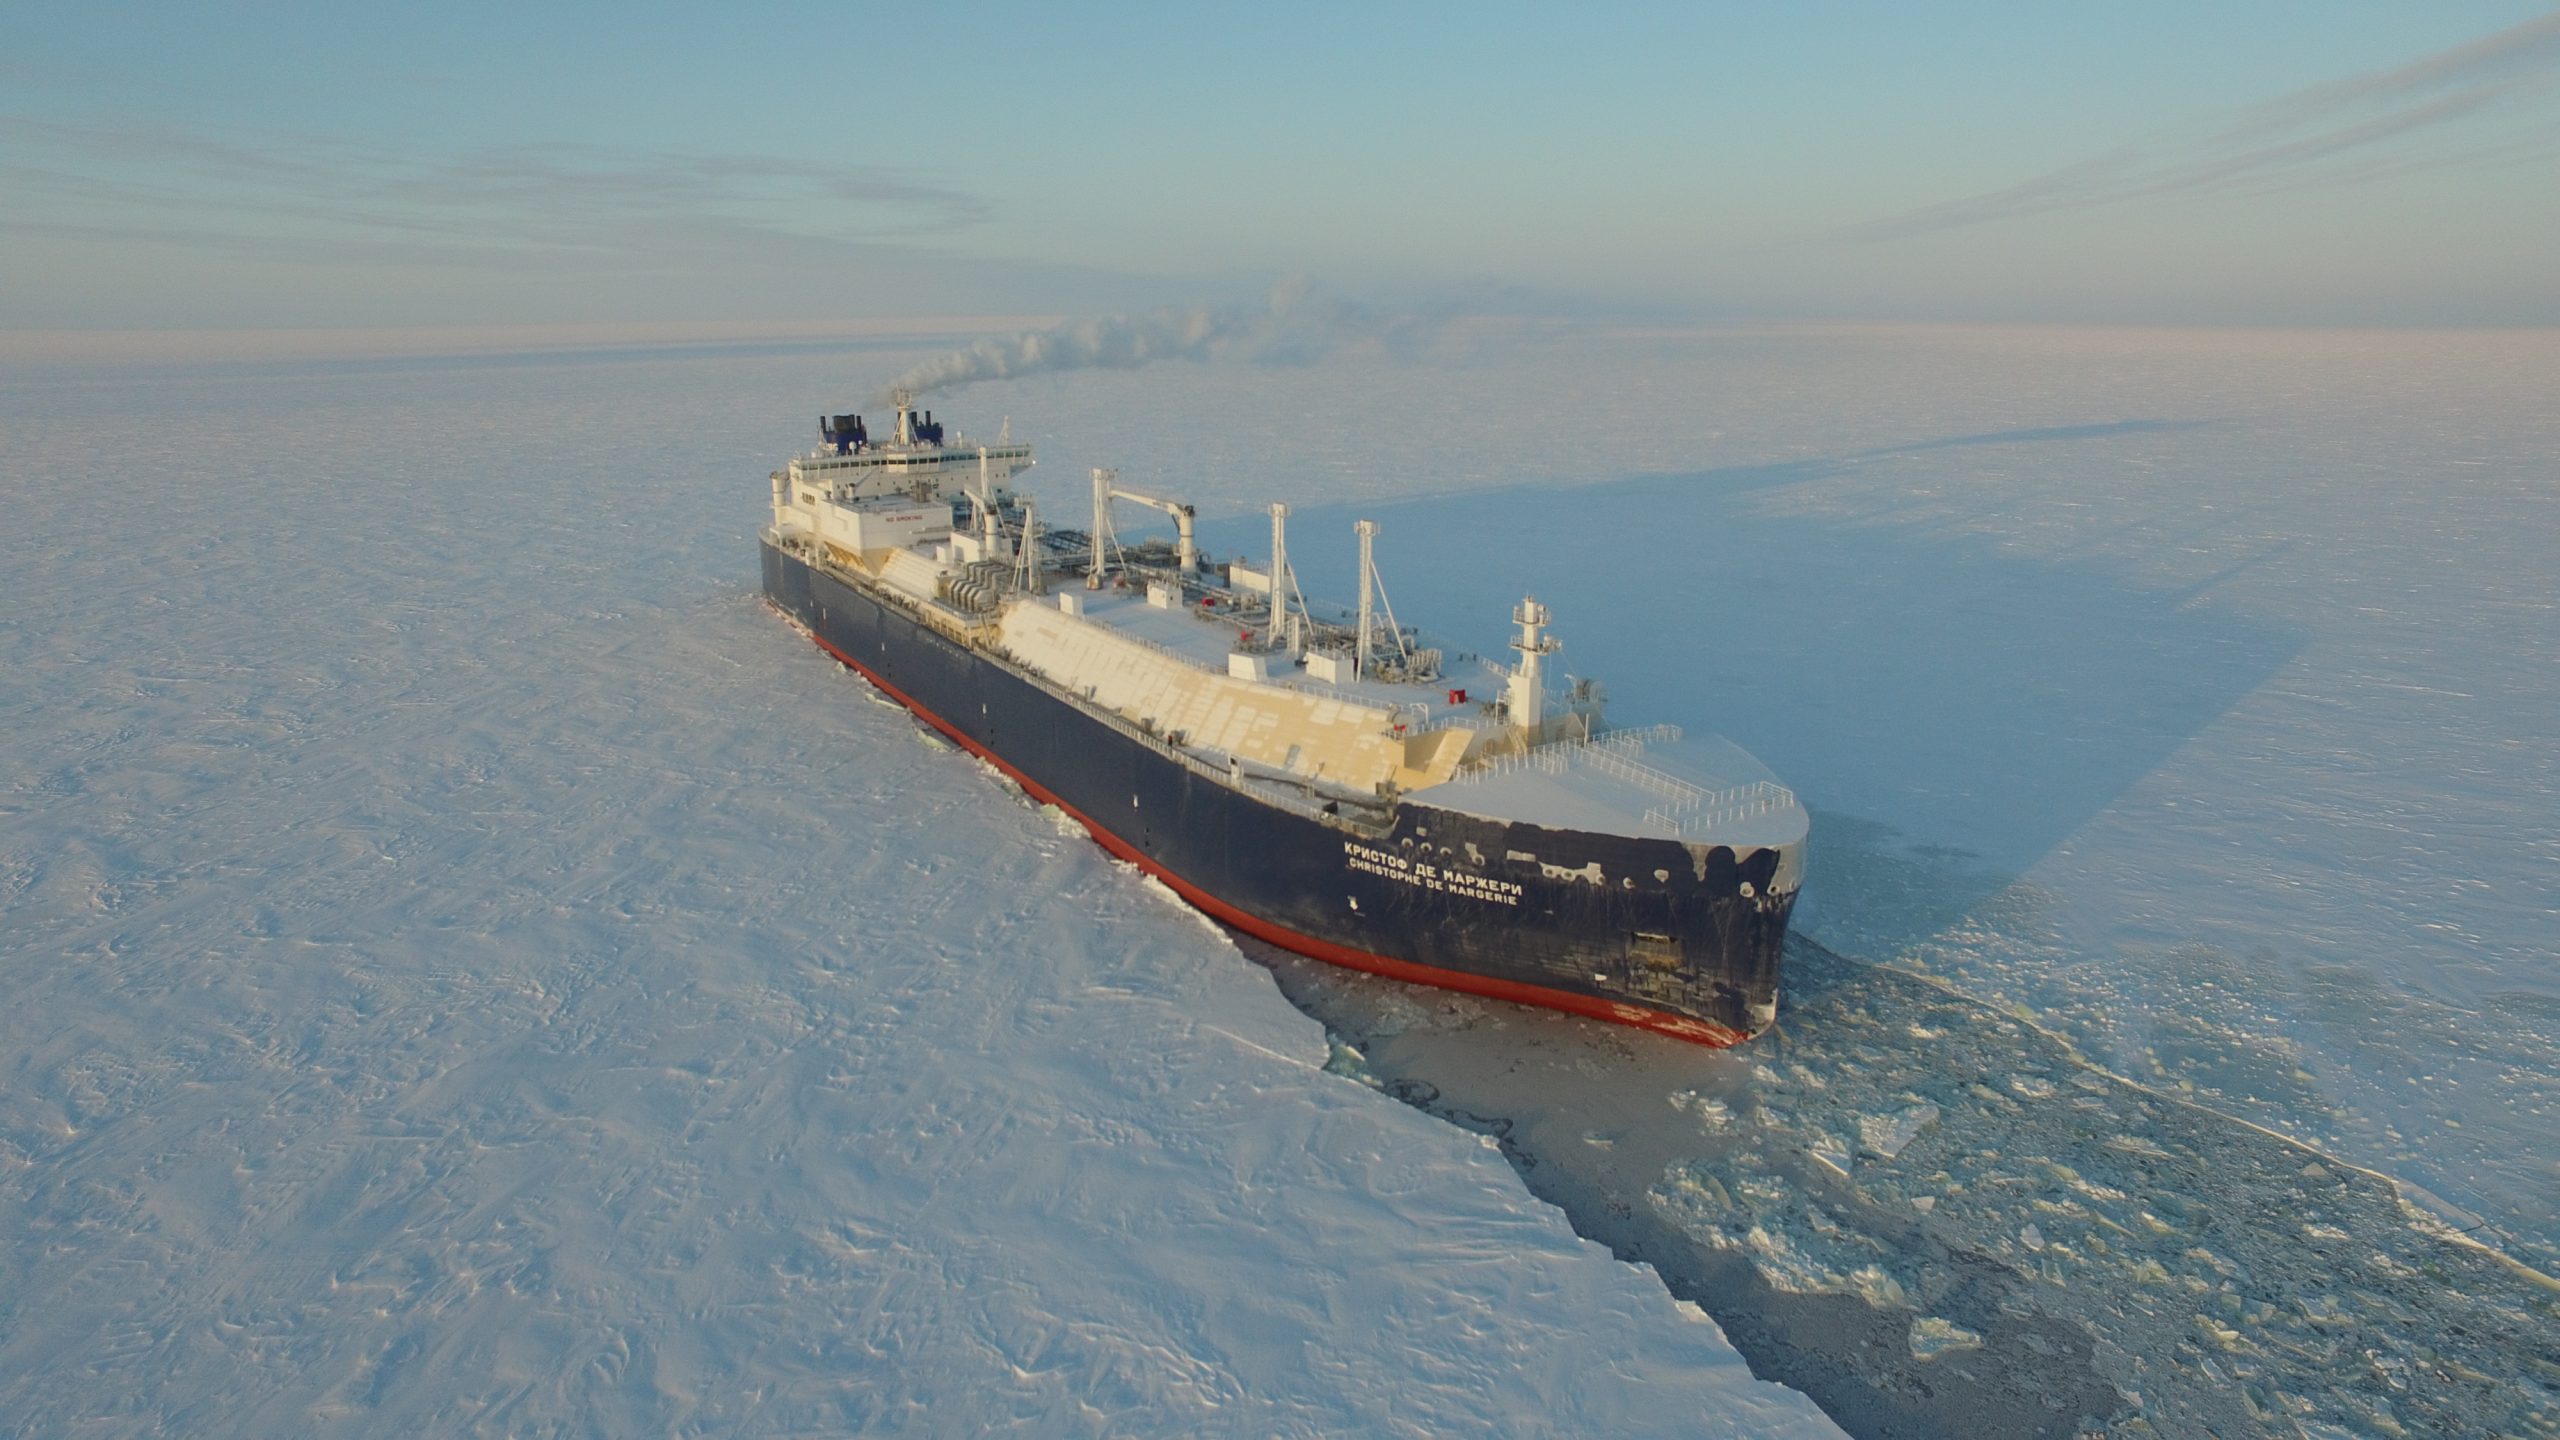 Ρωσικό δεξαμενόπλοιο διέσχισε για πρώτη φορά την Αρκτική χωρίς συνοδεία παγοθραυστικού